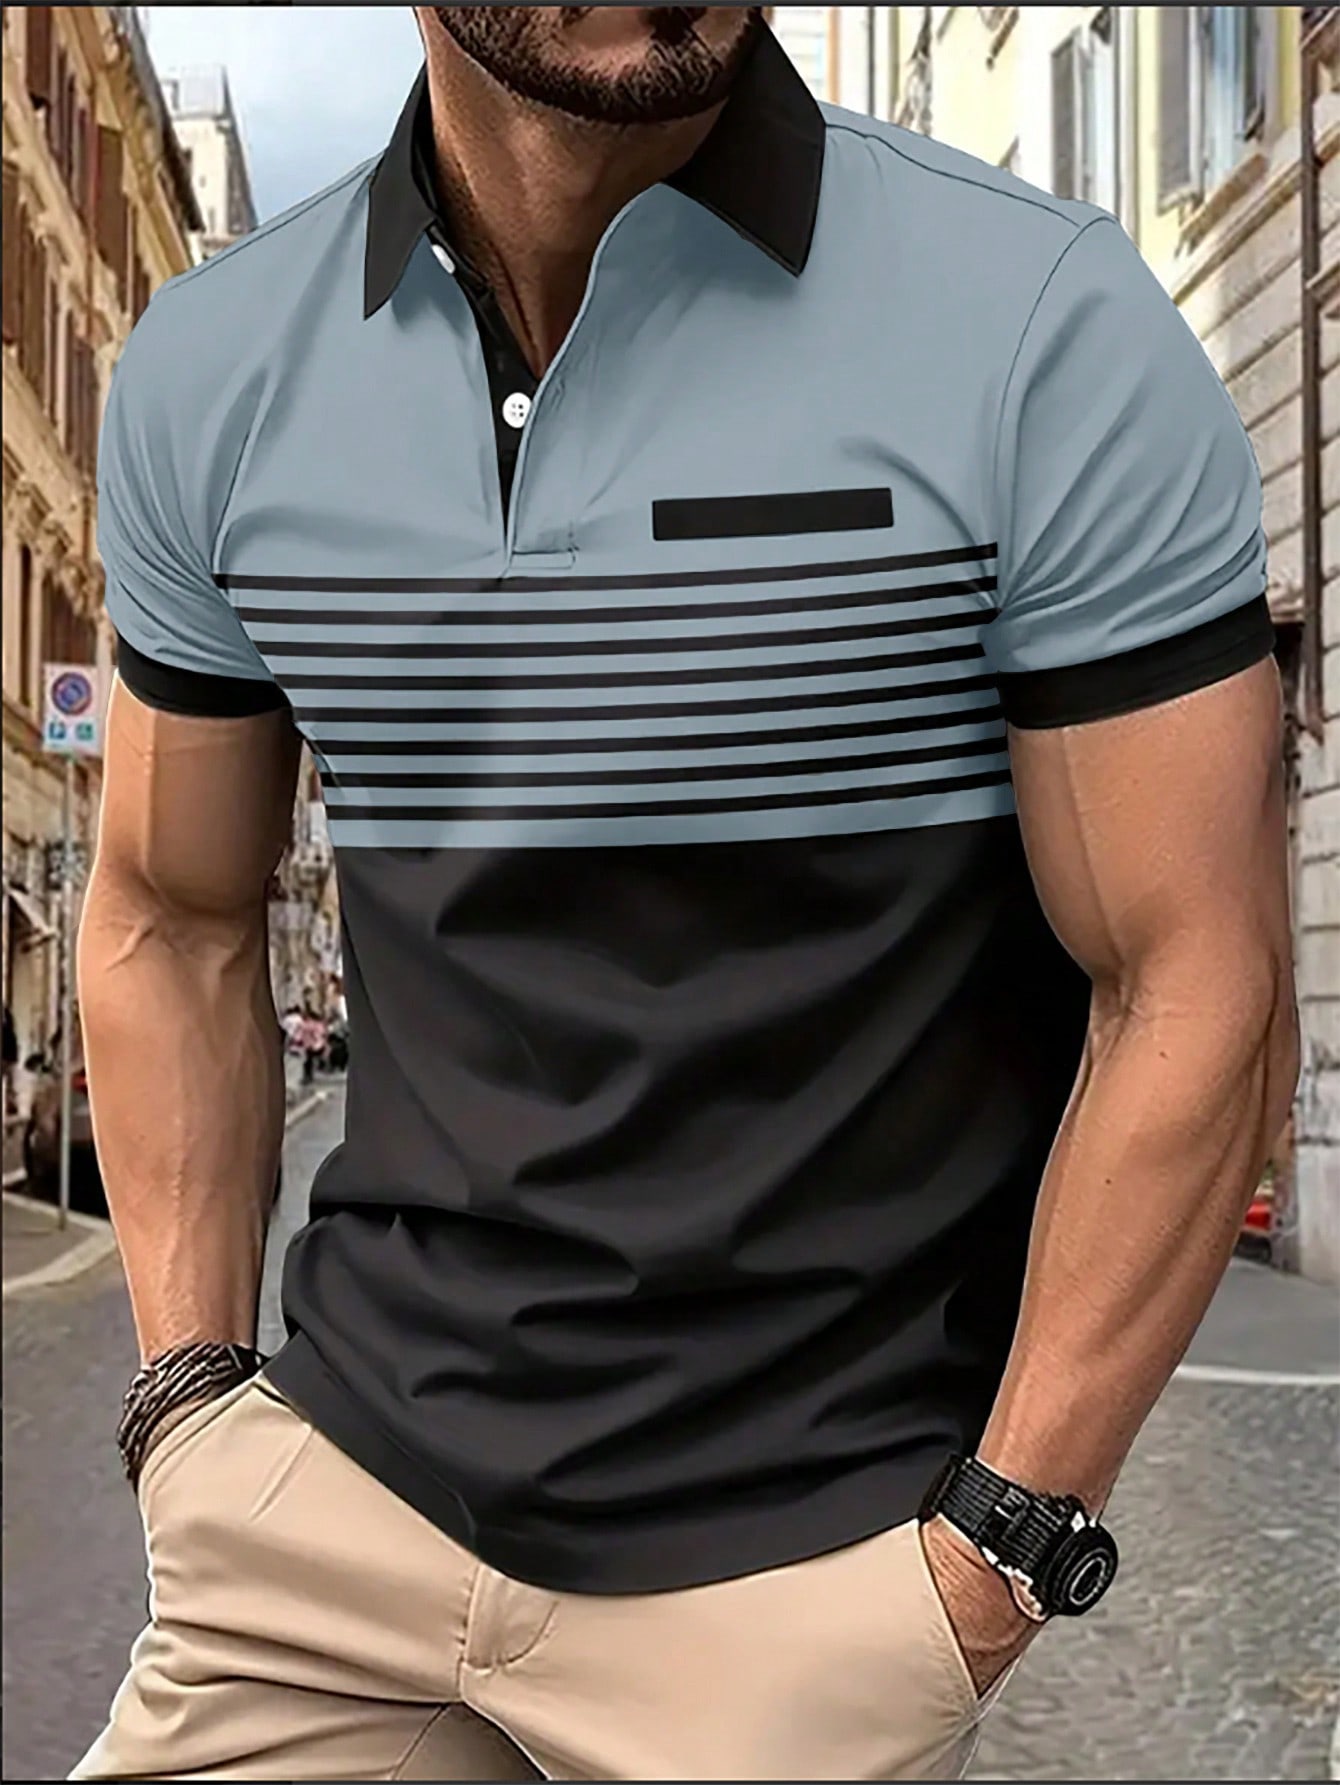 Мужская рубашка-поло контрастного цвета Manfinity Homme, черный рубашка мужская из ткани оксфорд с коротким рукавом в полоску 100% хлопок